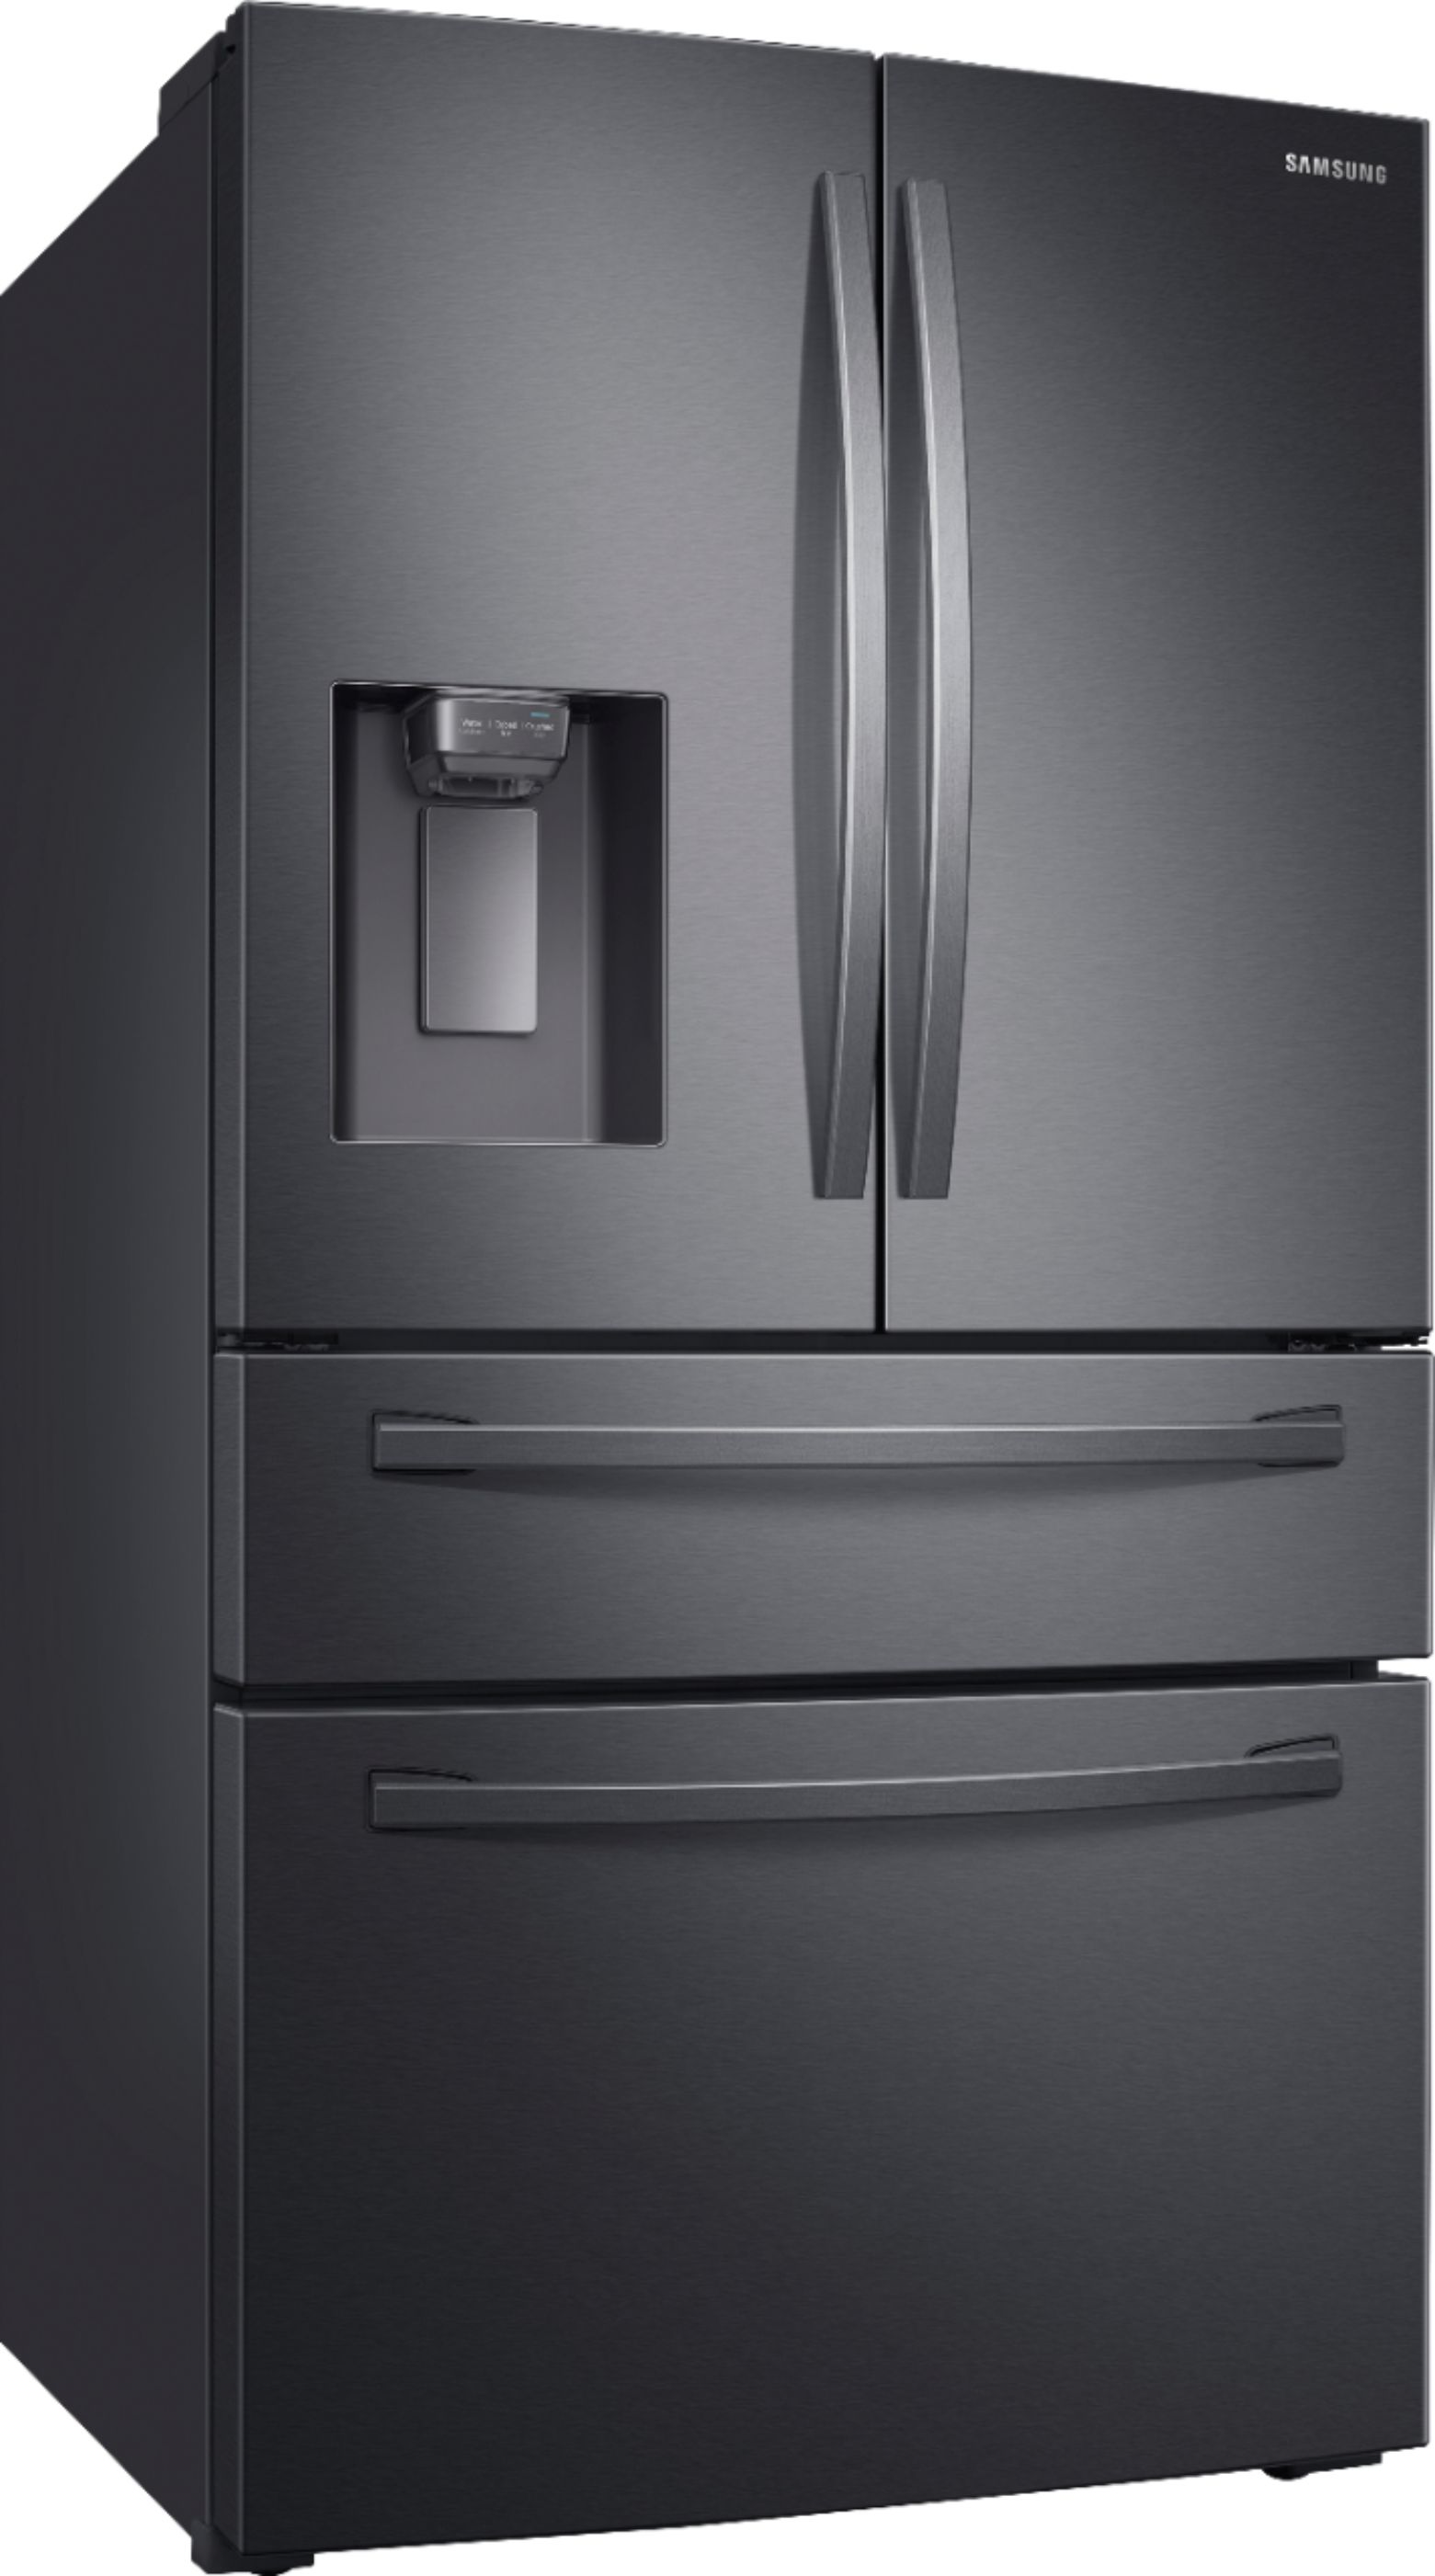 Samsung 28 cu. ft. 4Door French Door Refrigerator with